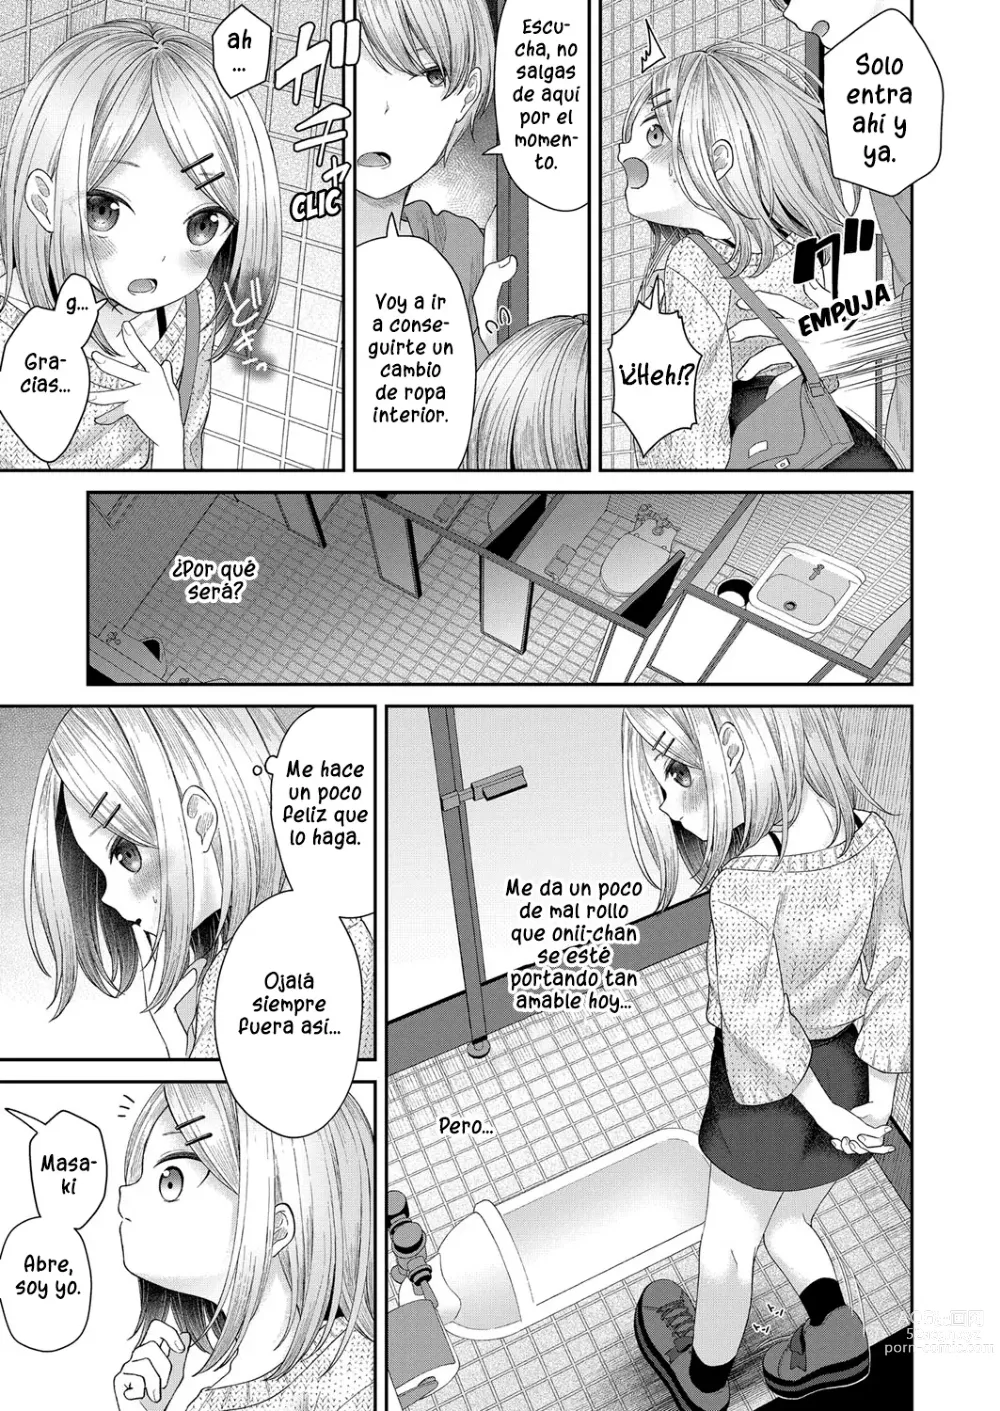 Page 9 of manga Dicktok